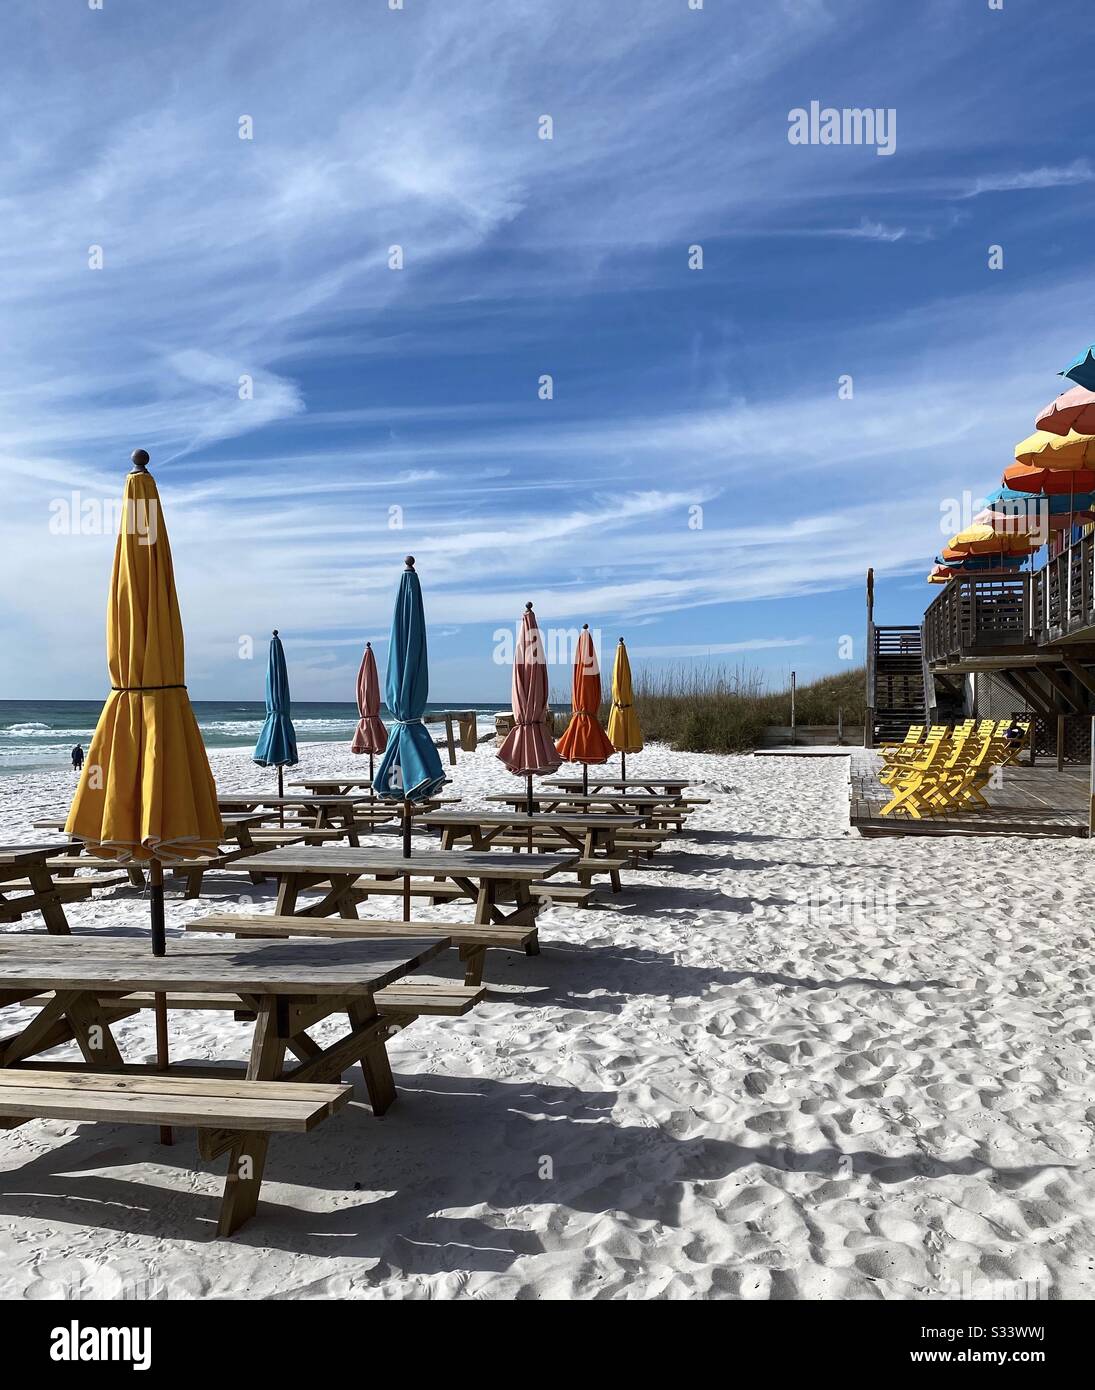 Tavoli da picnic all'aperto sulla spiaggia di sabbia bianca con sedie colorate e ombrelloni Foto Stock